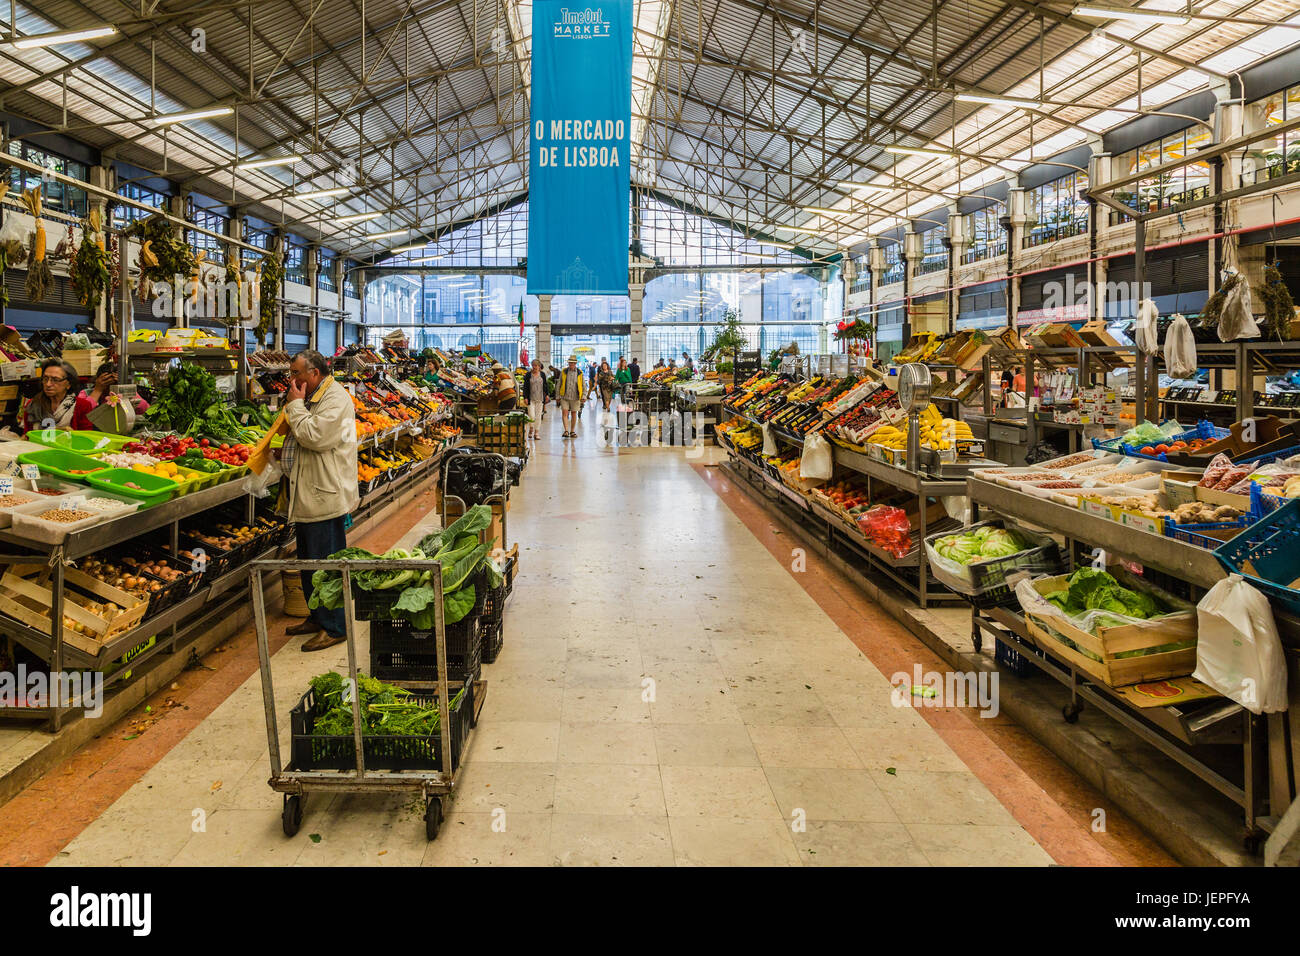 Lisbona, Portogallo - 20 maggio 2017: mercato cittadino con la frutta e la verdura di Lisbona, Portogallo Foto Stock